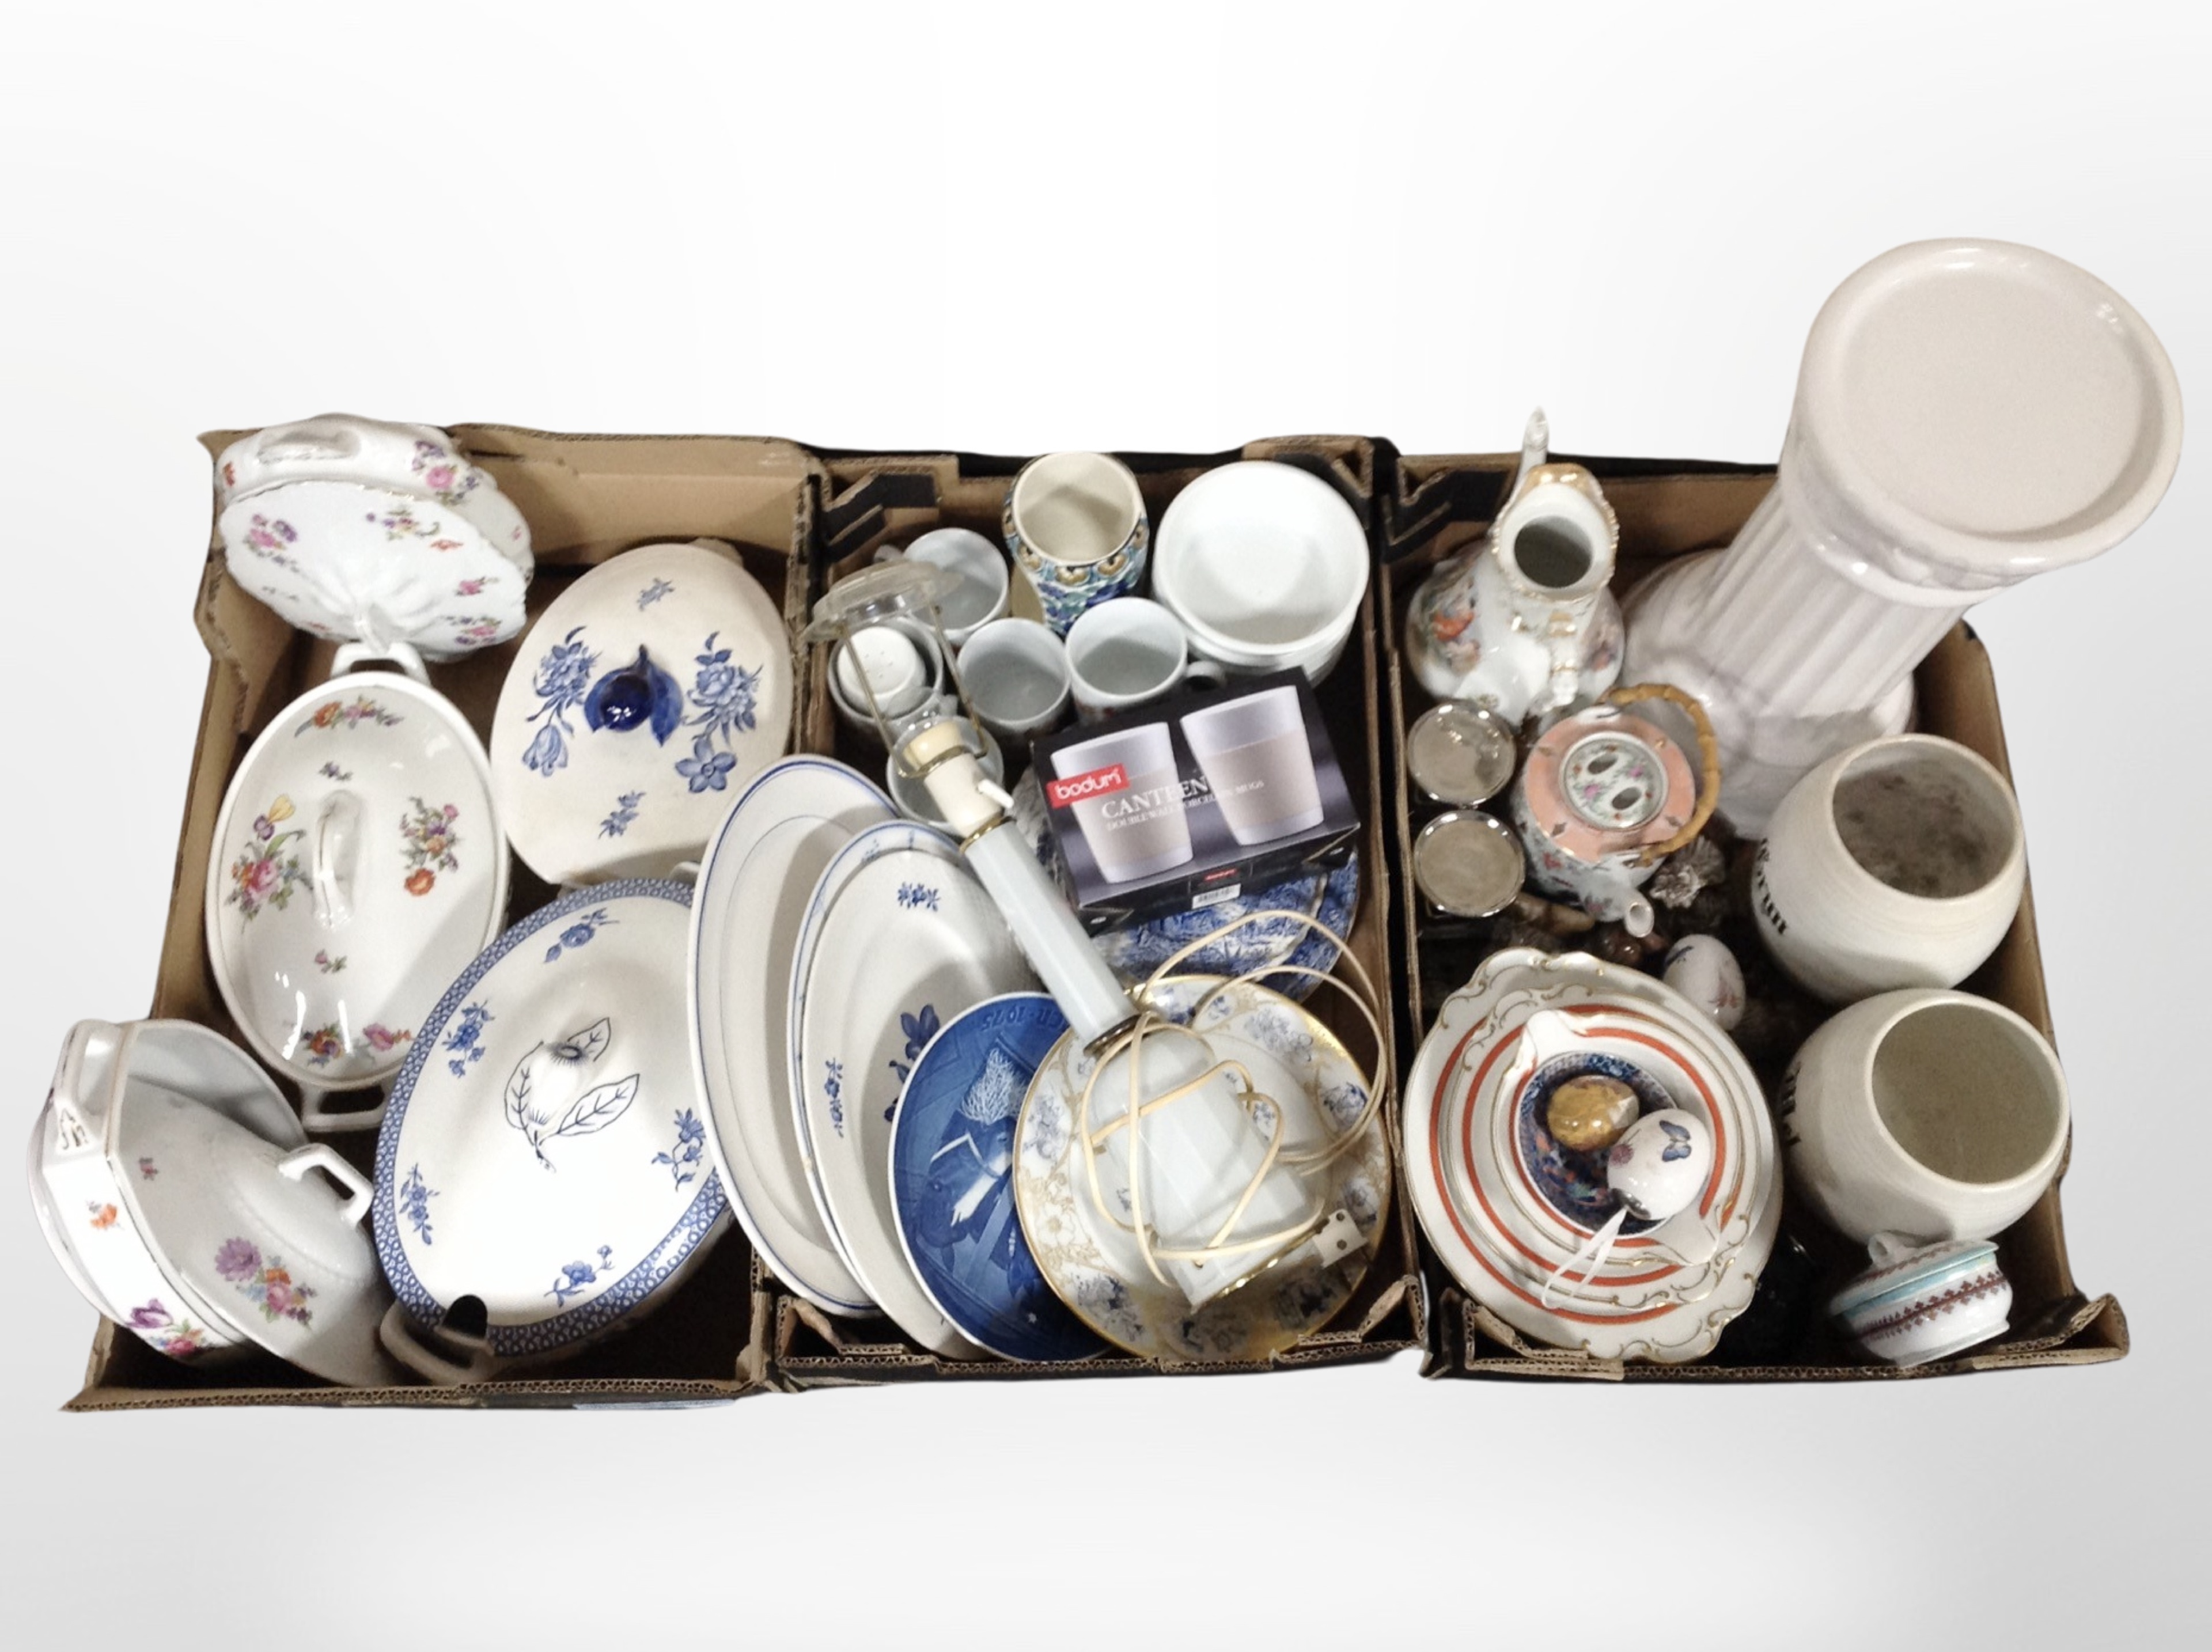 Three boxes of Scandinavian ceramics, lamp base, dinner wares, kitchen storage jars, - Image 2 of 2